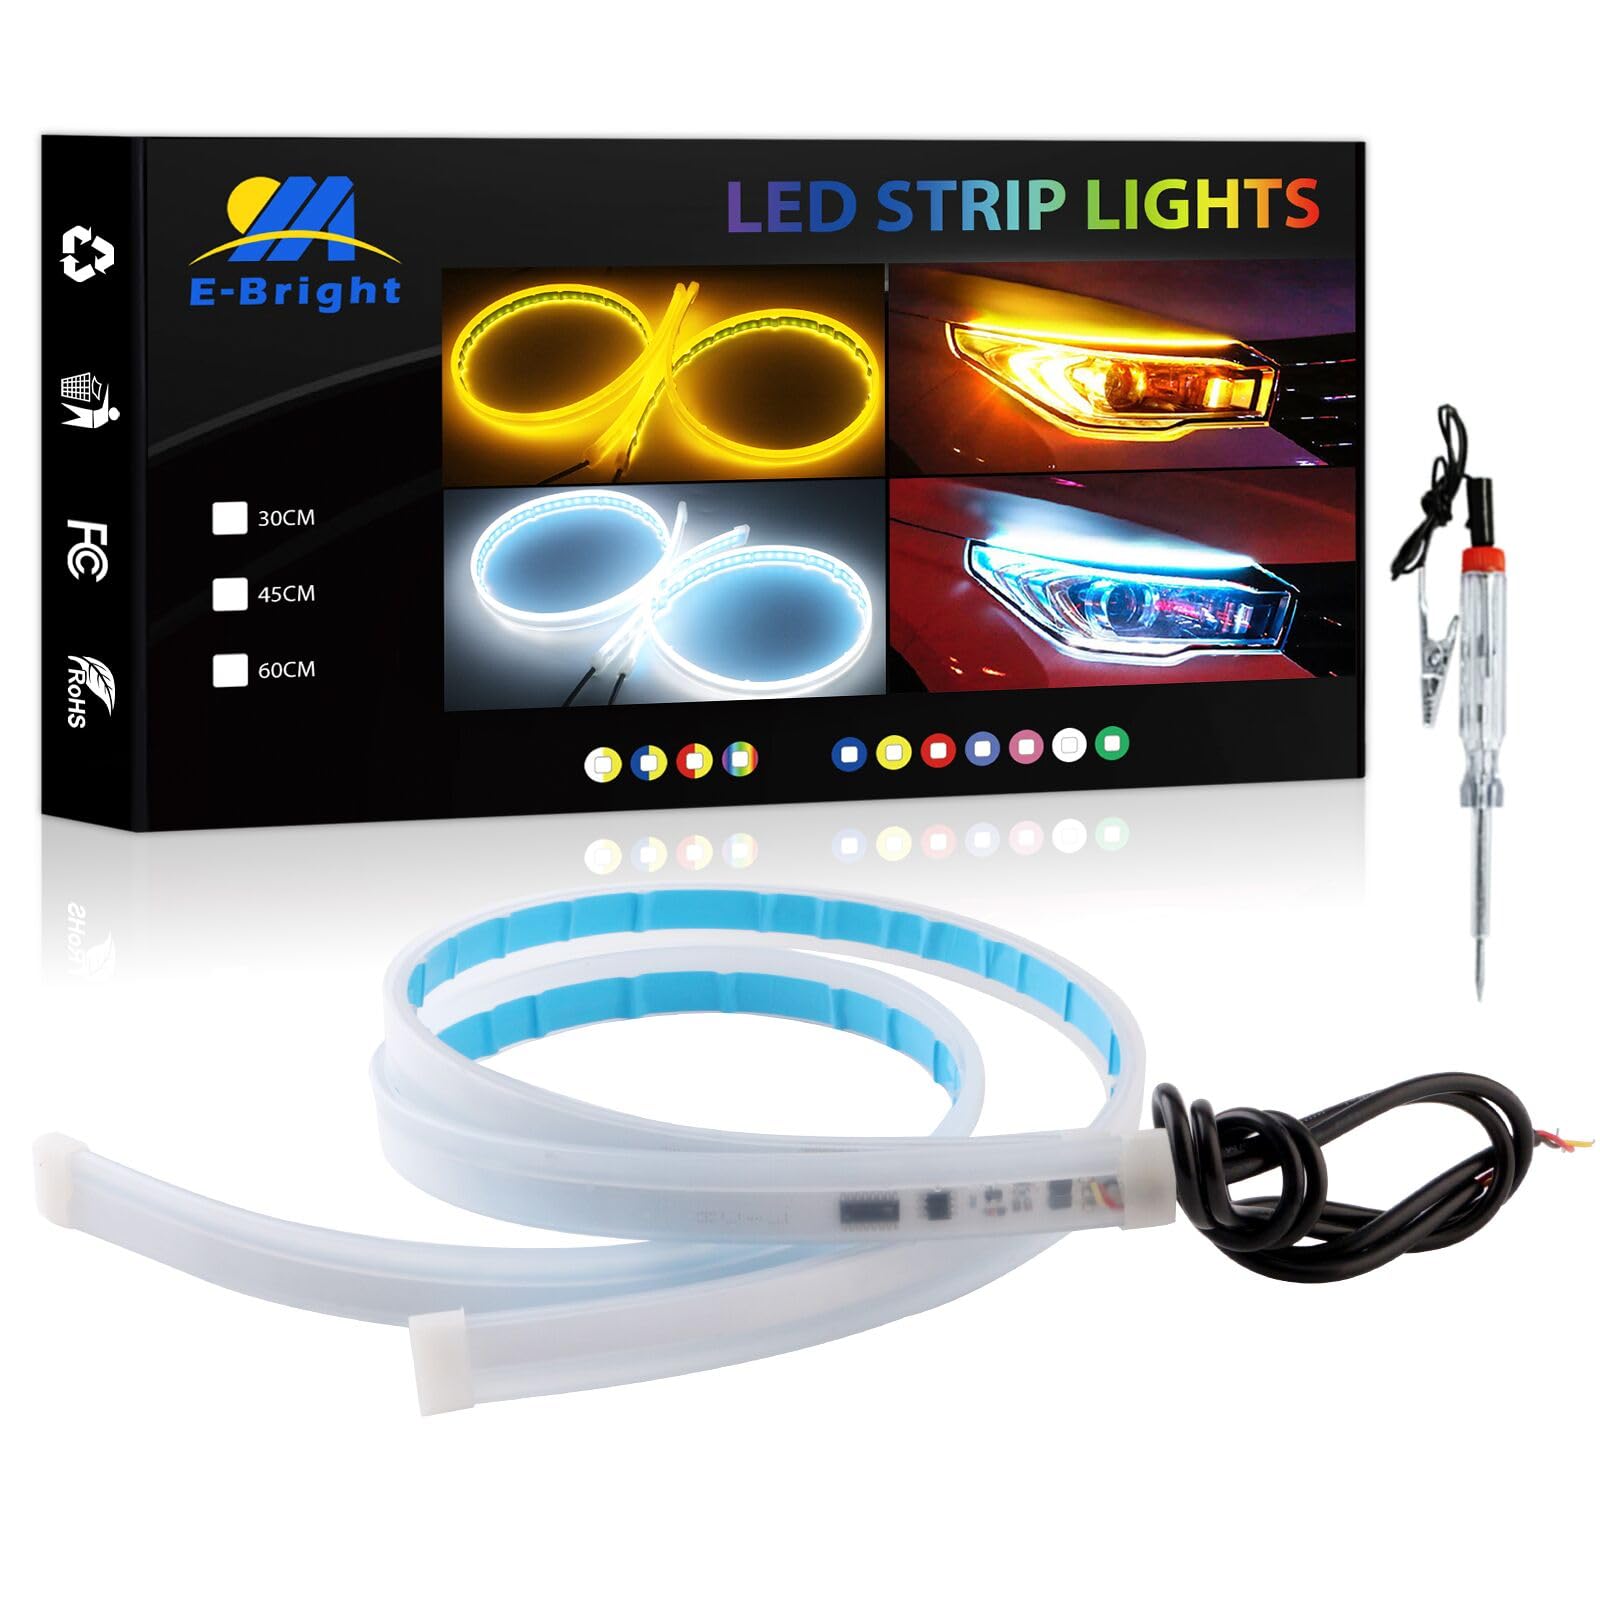 YM E-Bright DRL LED-Streifen, 2 Stück, Tagfahrlicht, flexibel, 24 Zoll, 12 V, LED-Tagfahrlicht, LED-Streifen für Autoscheinwerfer, Rücklicht, Blinker (Bernstein & Weiß) von YM E-Bright